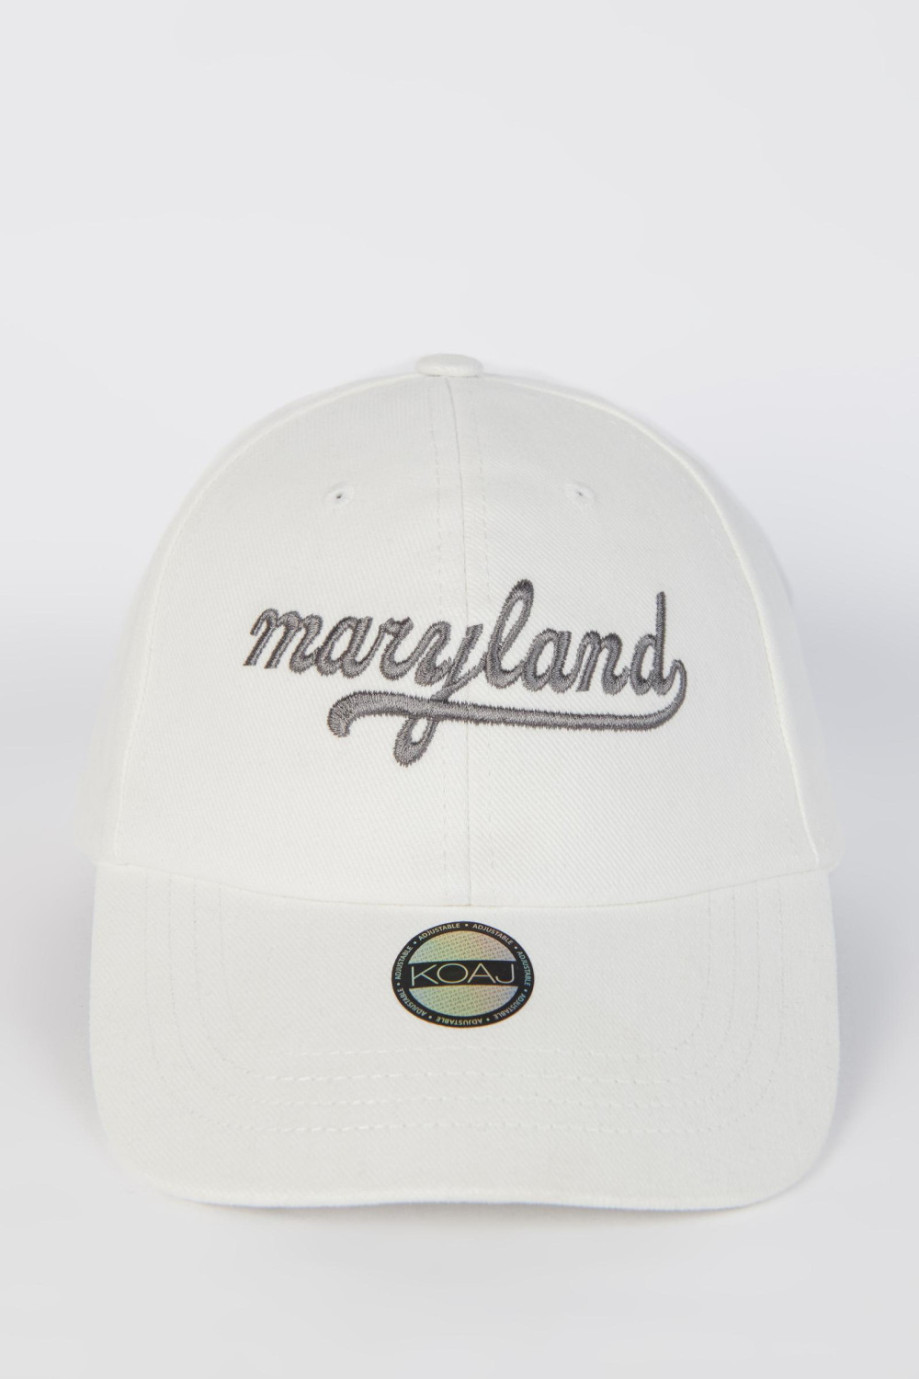 Cachucha beisbolera crema clara con bordado college de Maryland